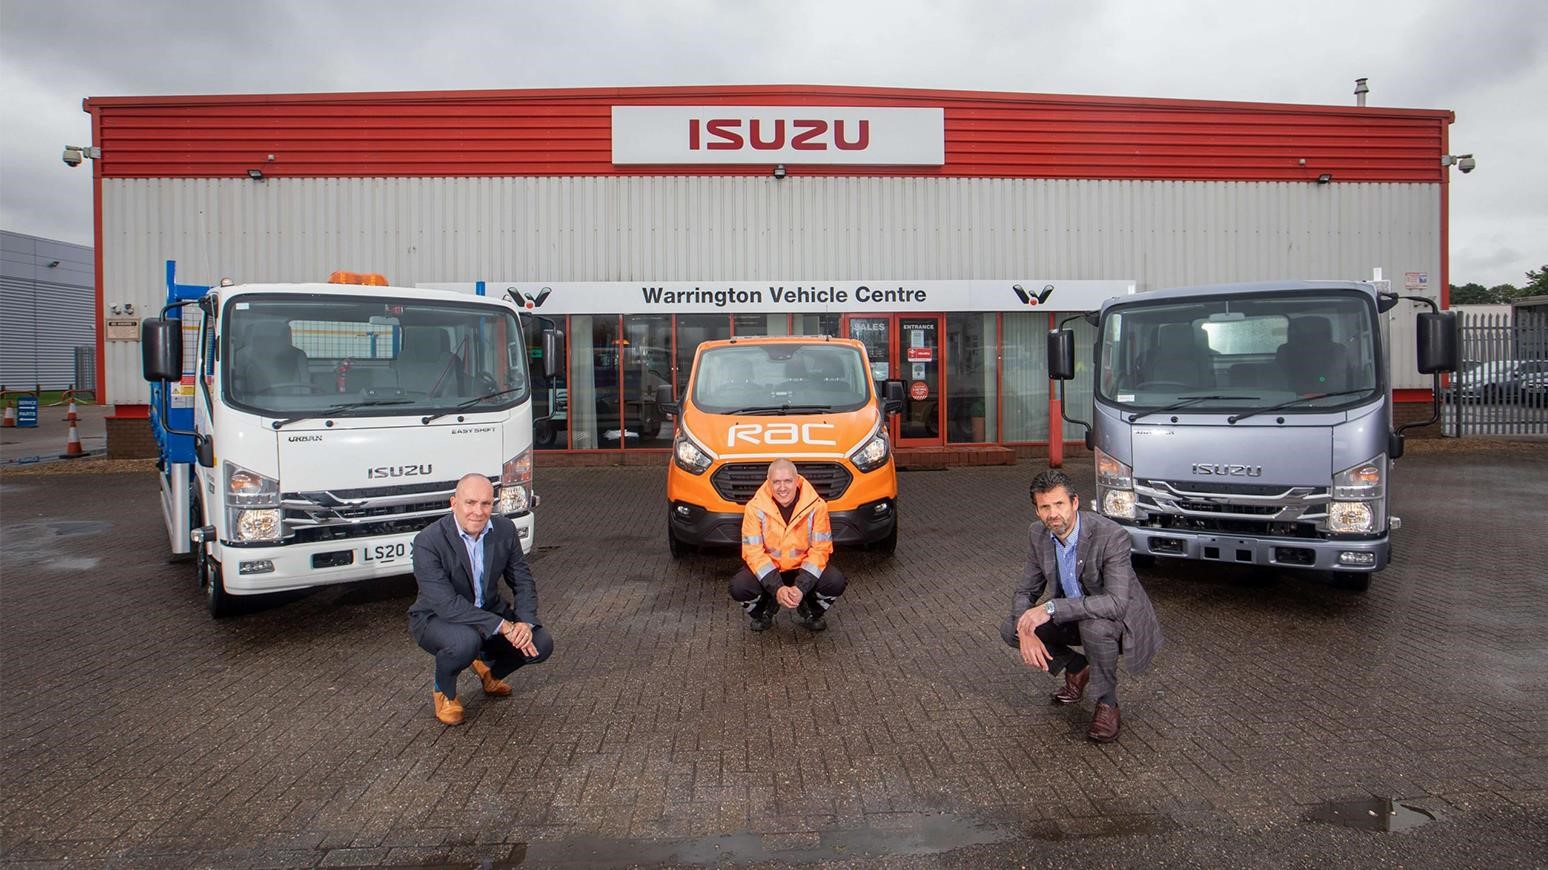 Isuzu Truck Taps RAC For UK Roadside & Breakdown Assistance